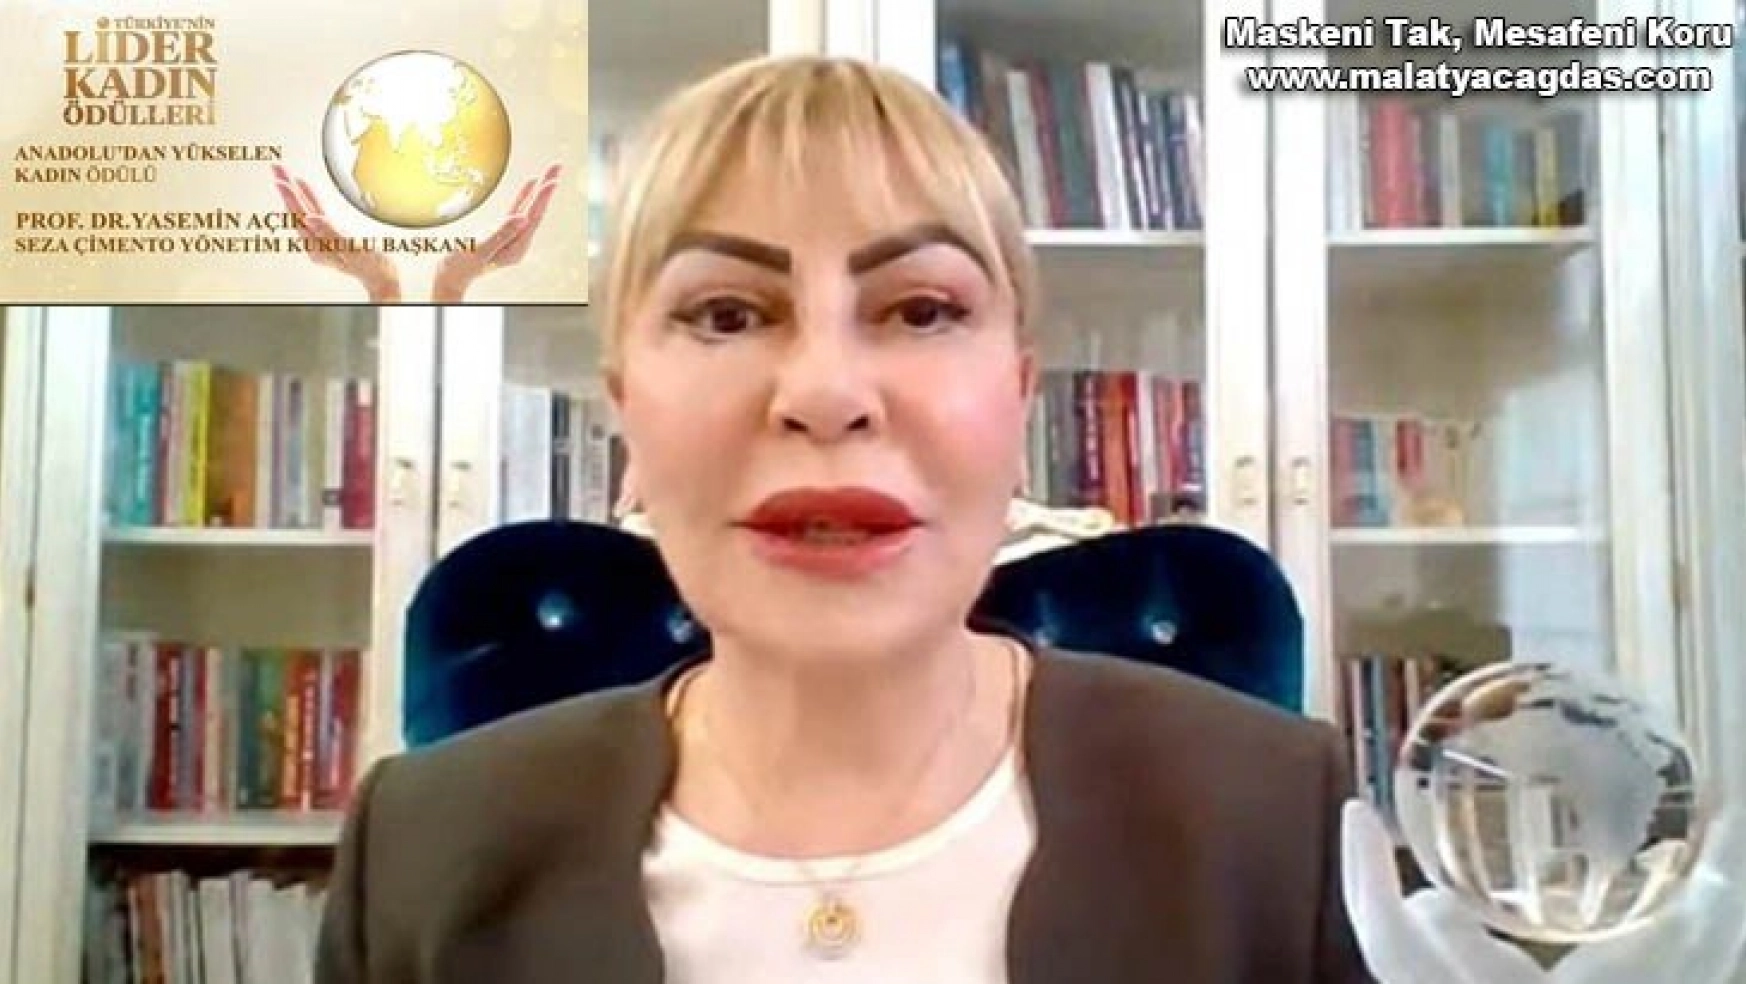 Prof. Dr. Yasemin Açık'a Anadolu'dan Yükselen Kadın Ödülü